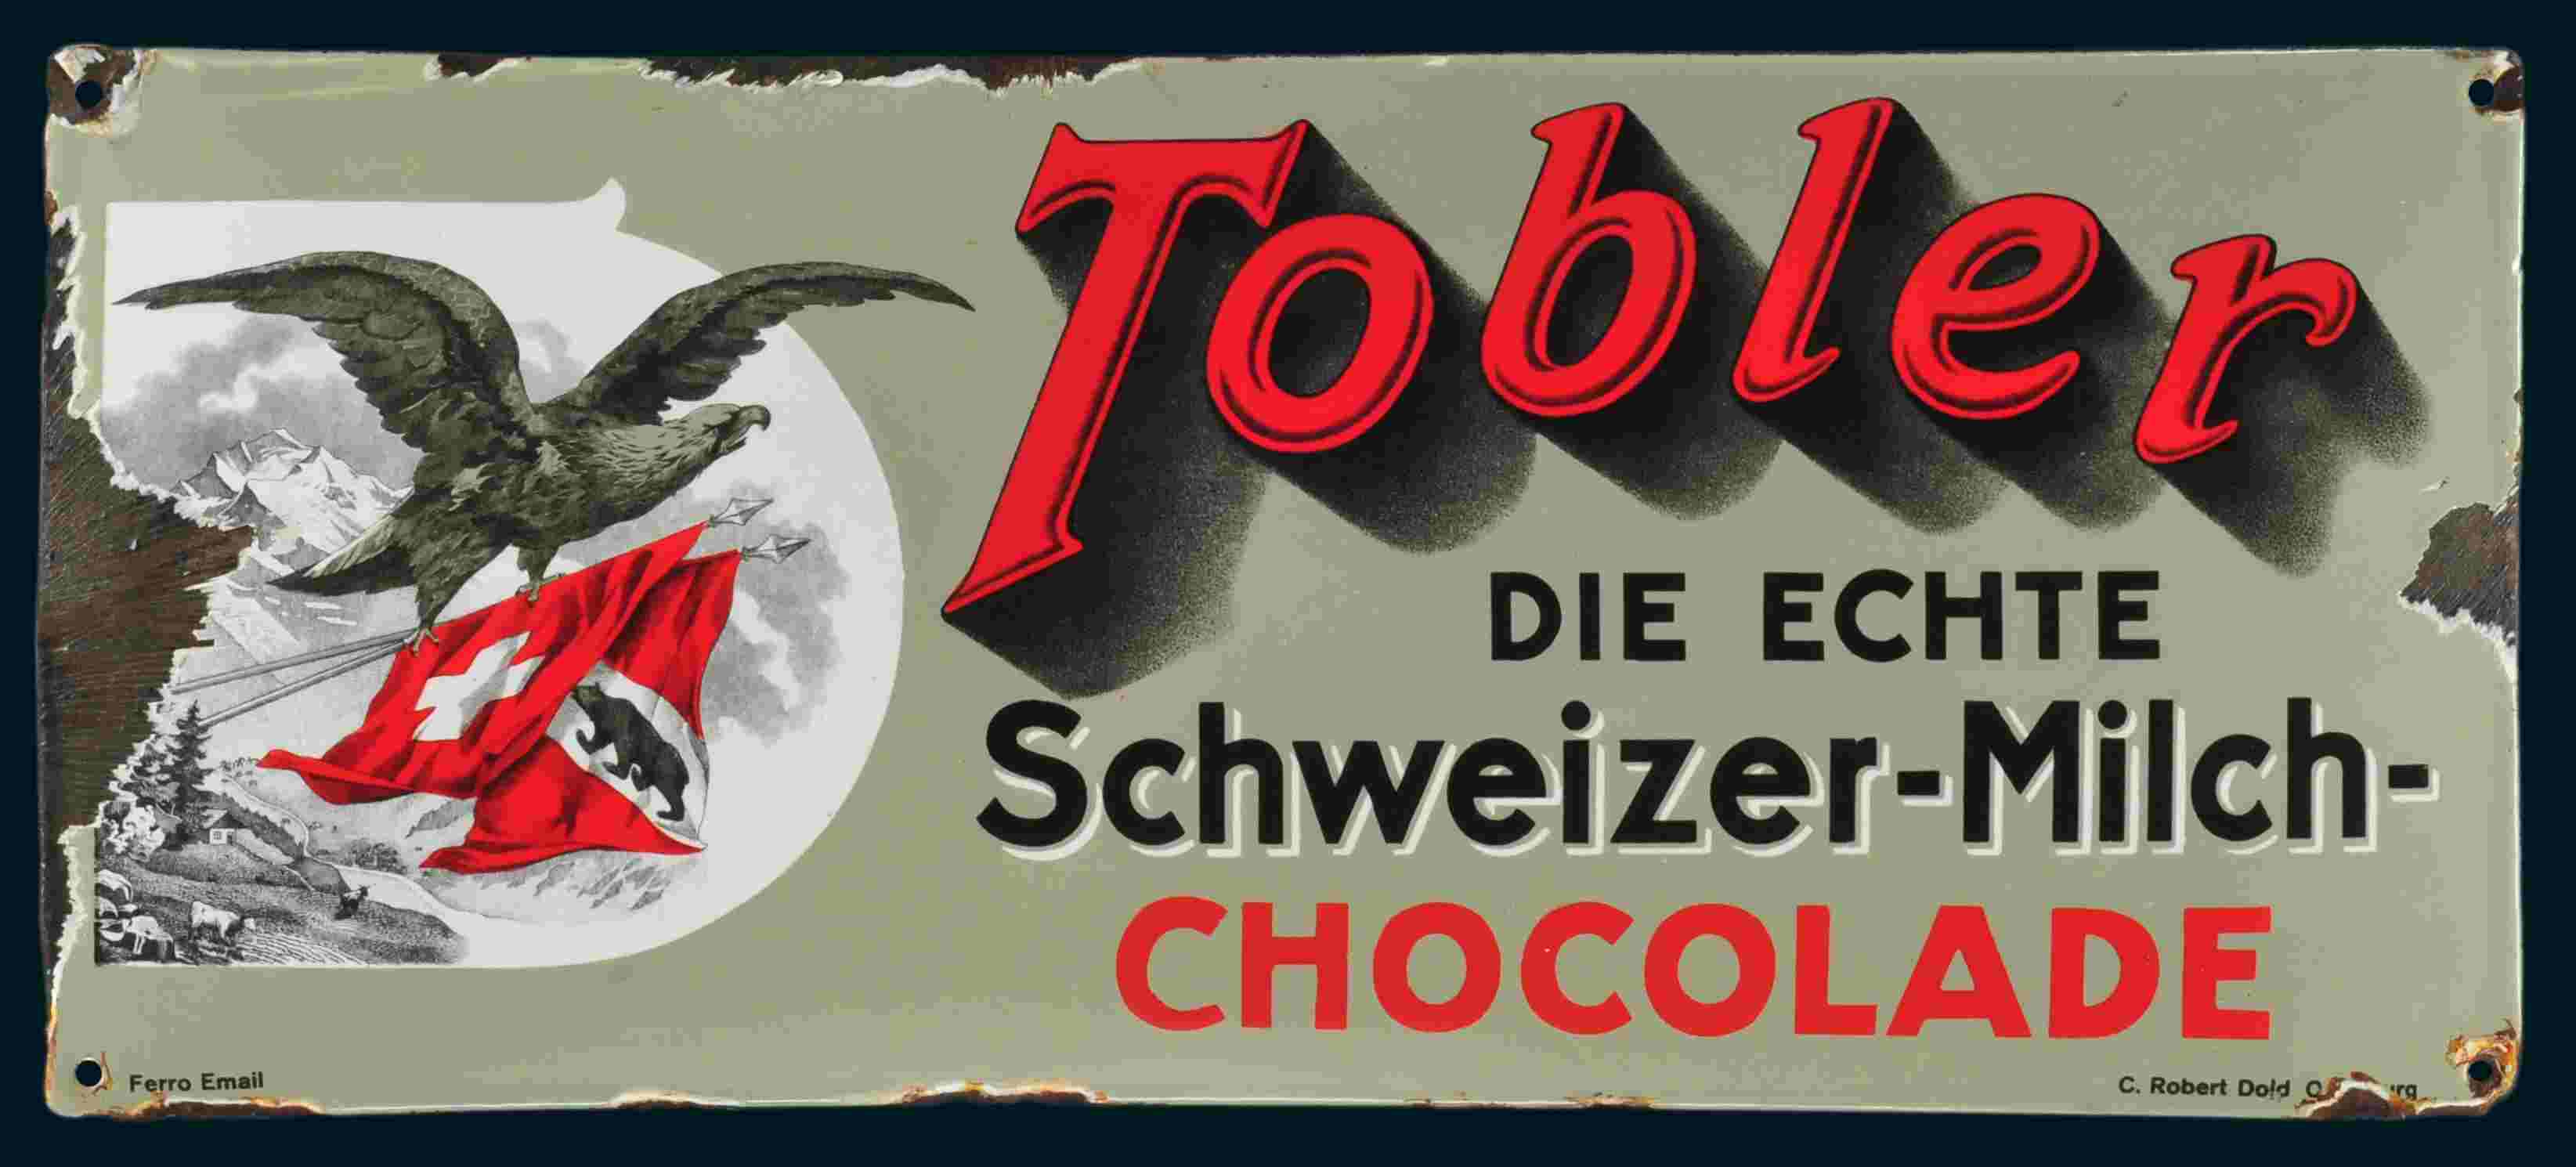 Tobler die echte Schweizer-Milch-Chocolade 